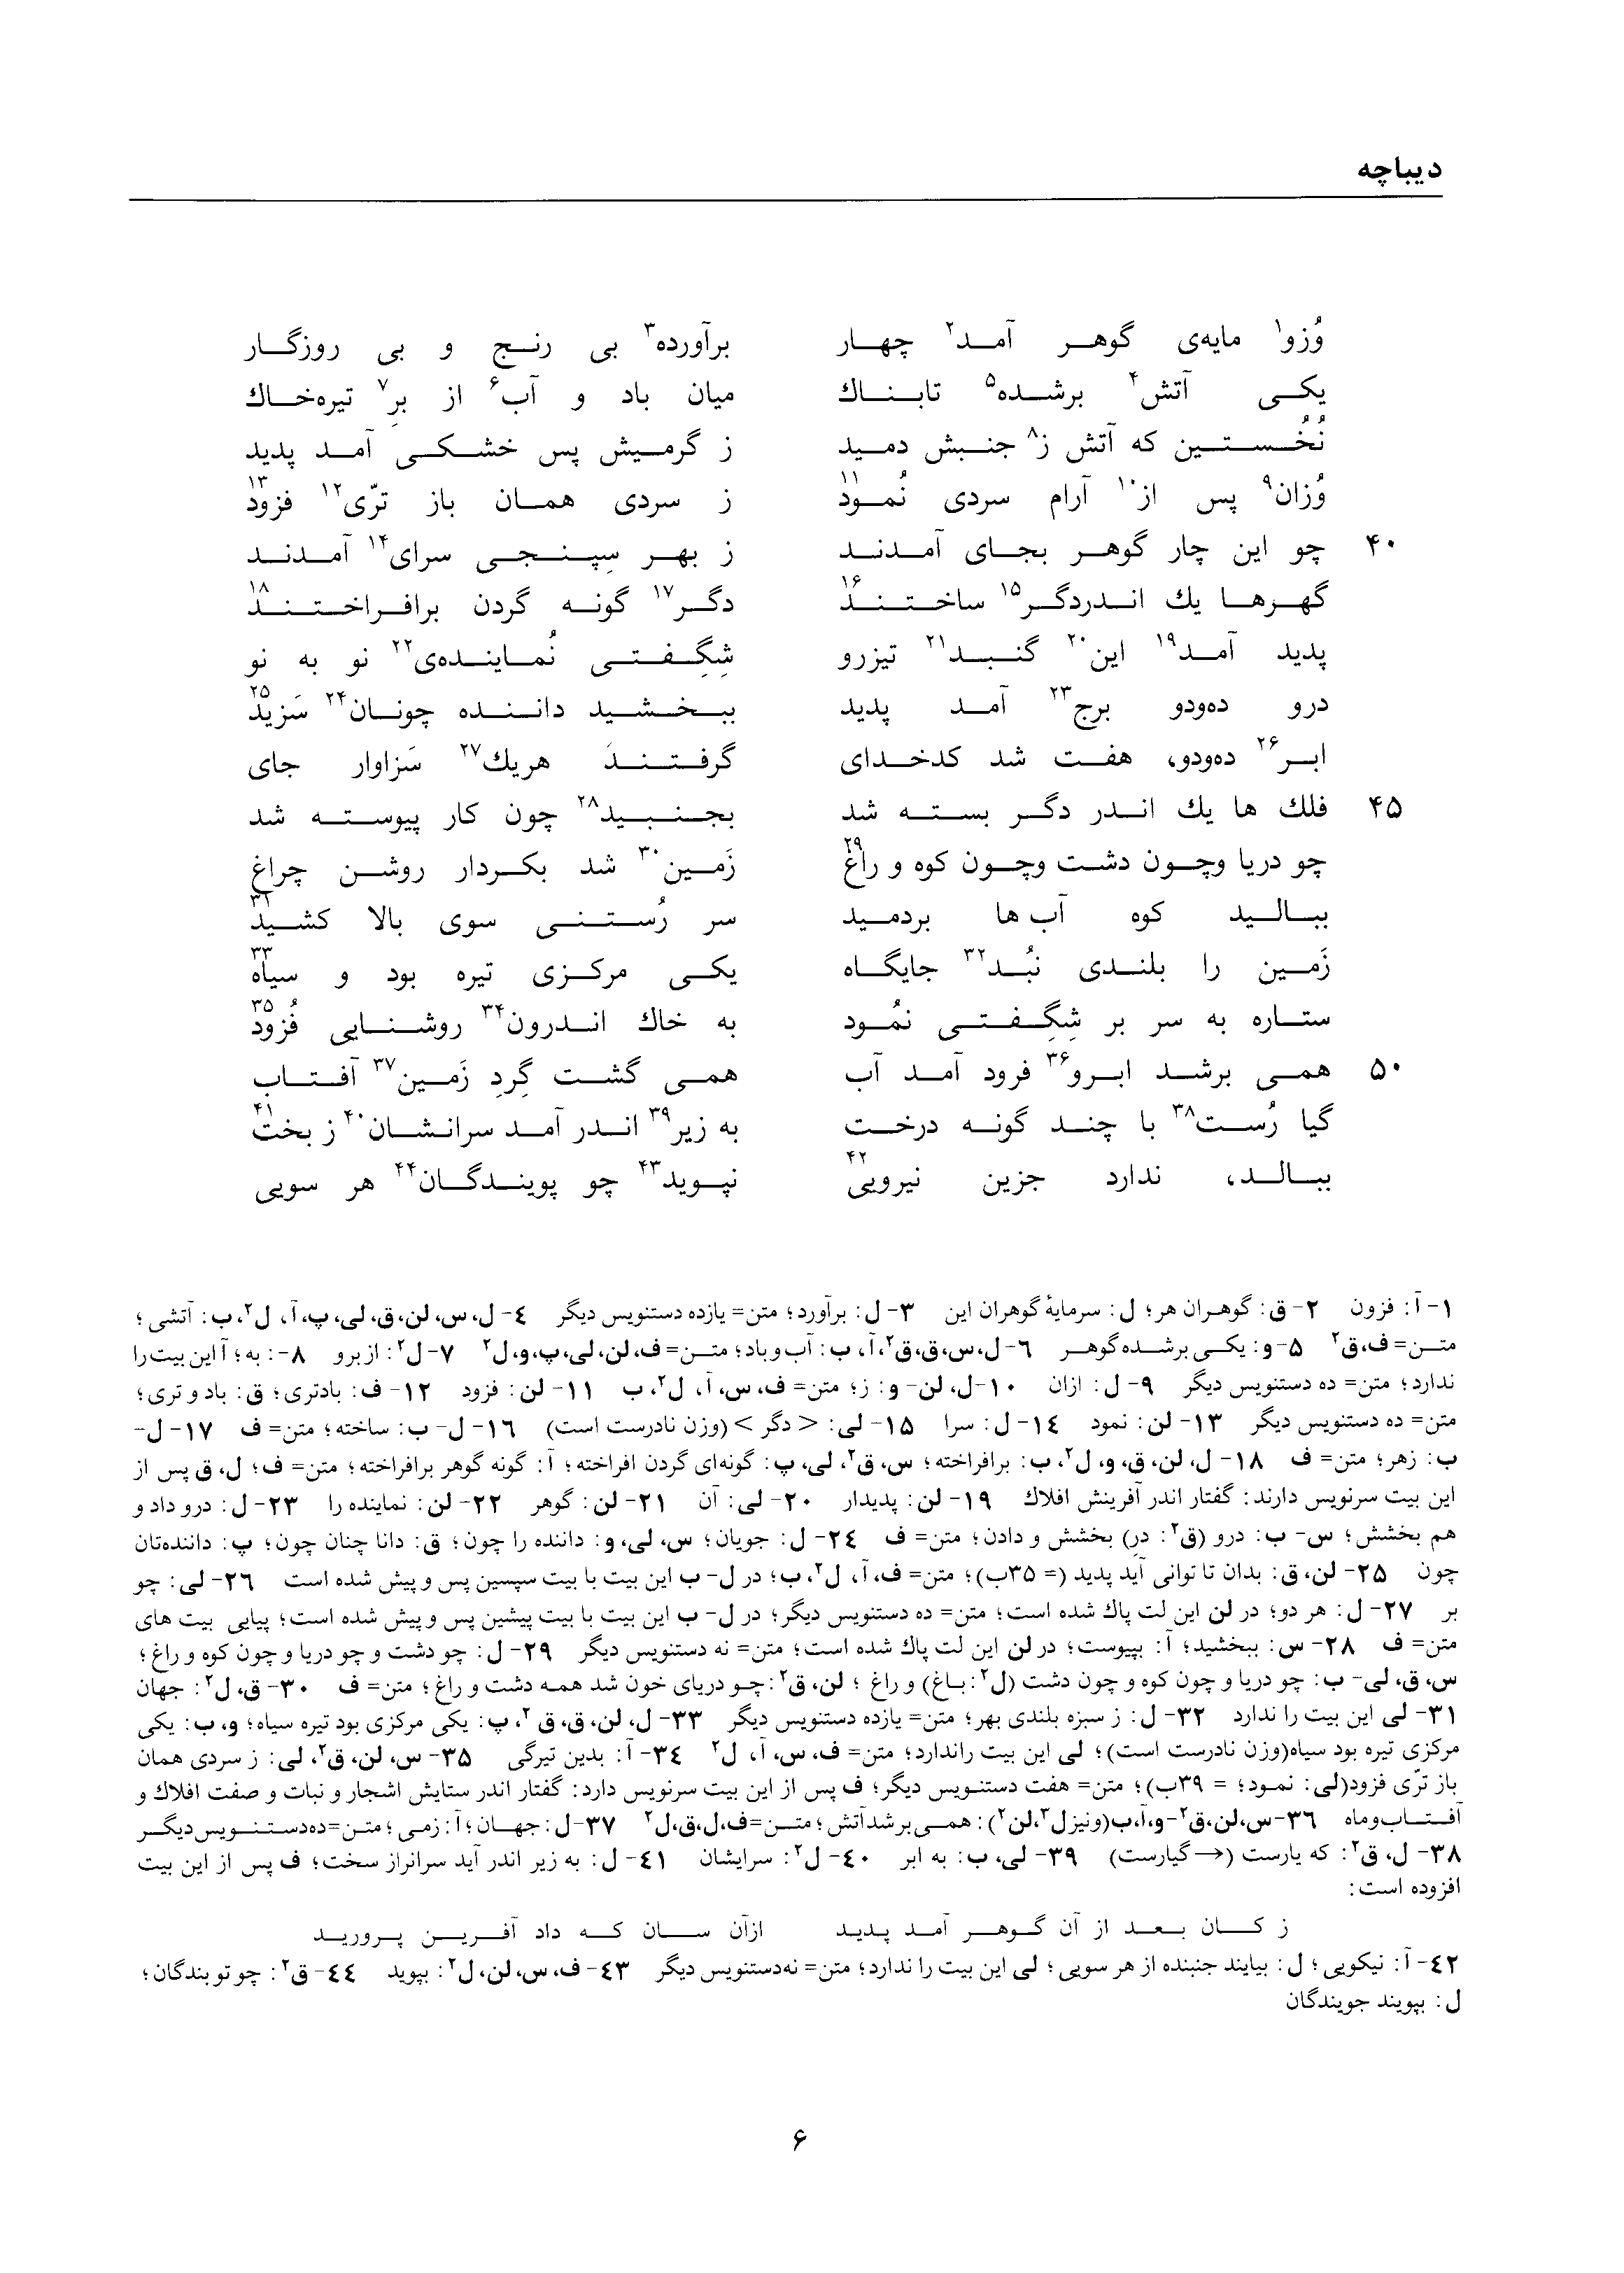 vol. 1, p. 6